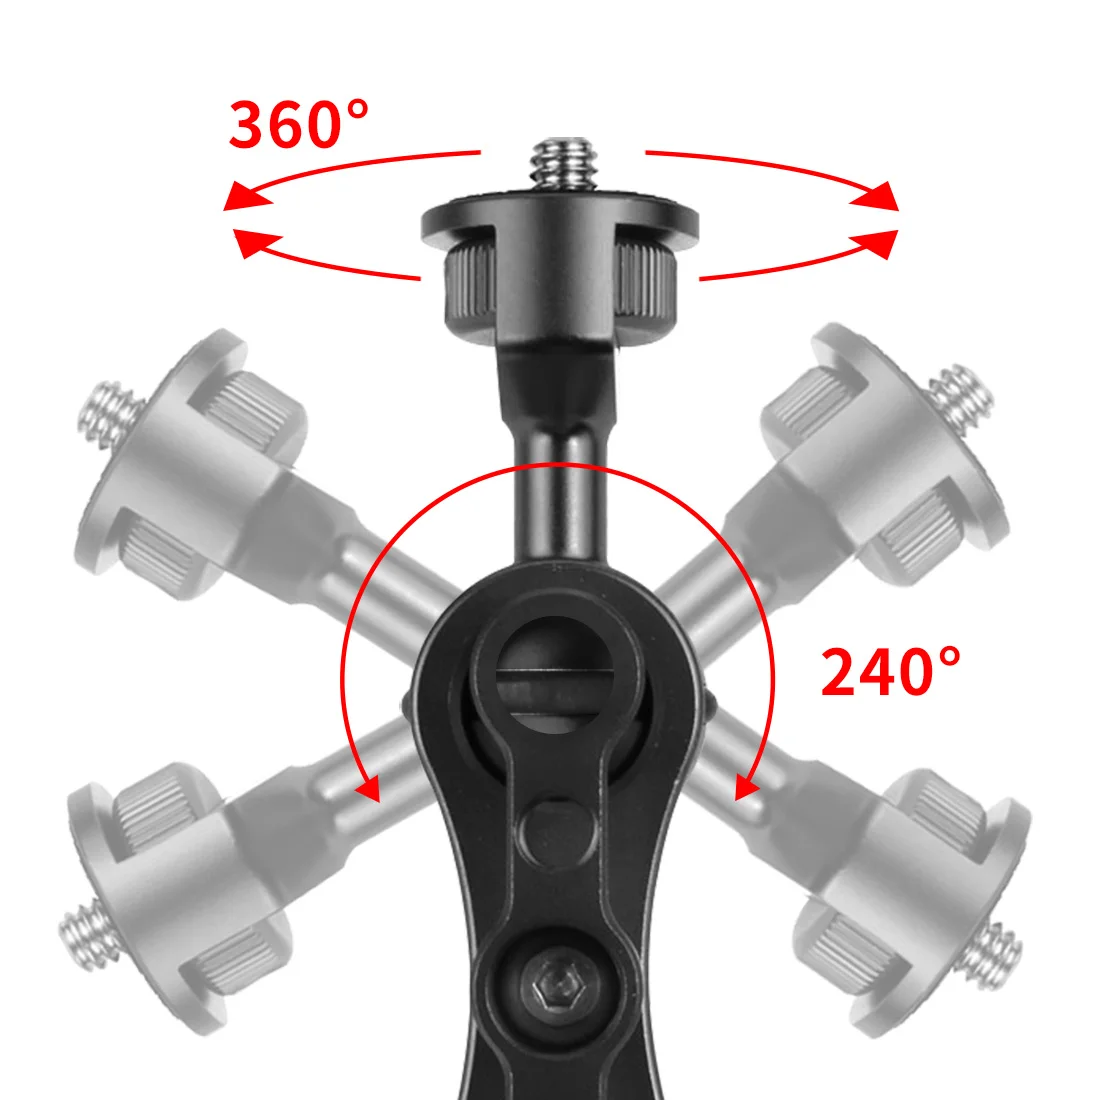 FEICHAO Opgraderet Dual BallHead 1/4 Skrue Mount Adapter Magic Arm 360 kuglehoved med Krabbe-Klo Klemme for Sony SLR Kamera Overvågning